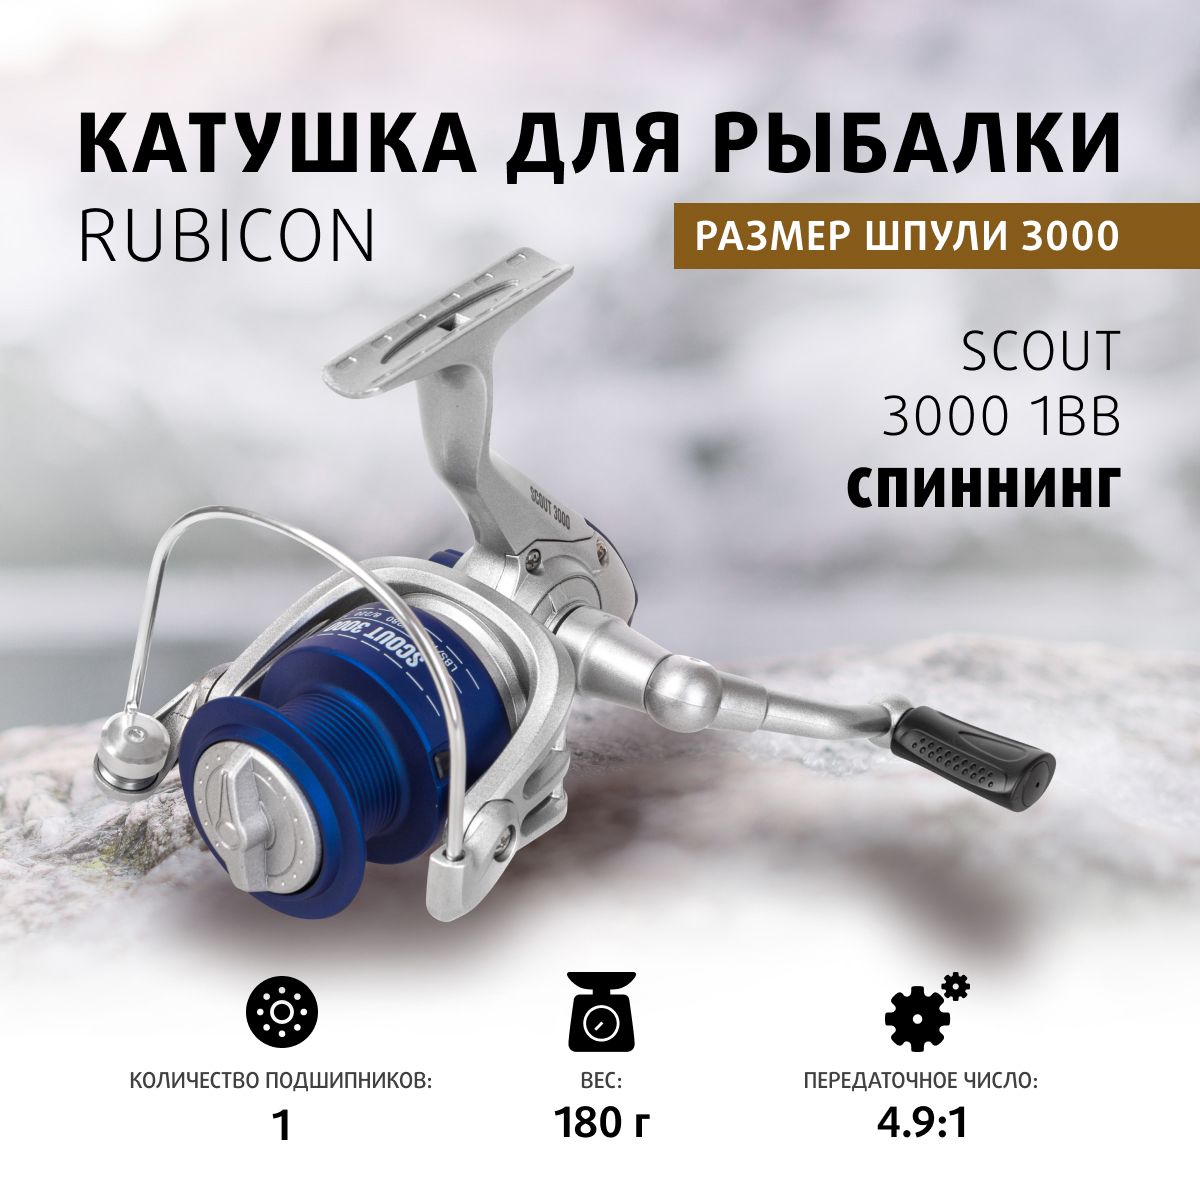 Rubicon Scout 3000A 1Bb – купить в интернет-магазине OZON по низкой цене